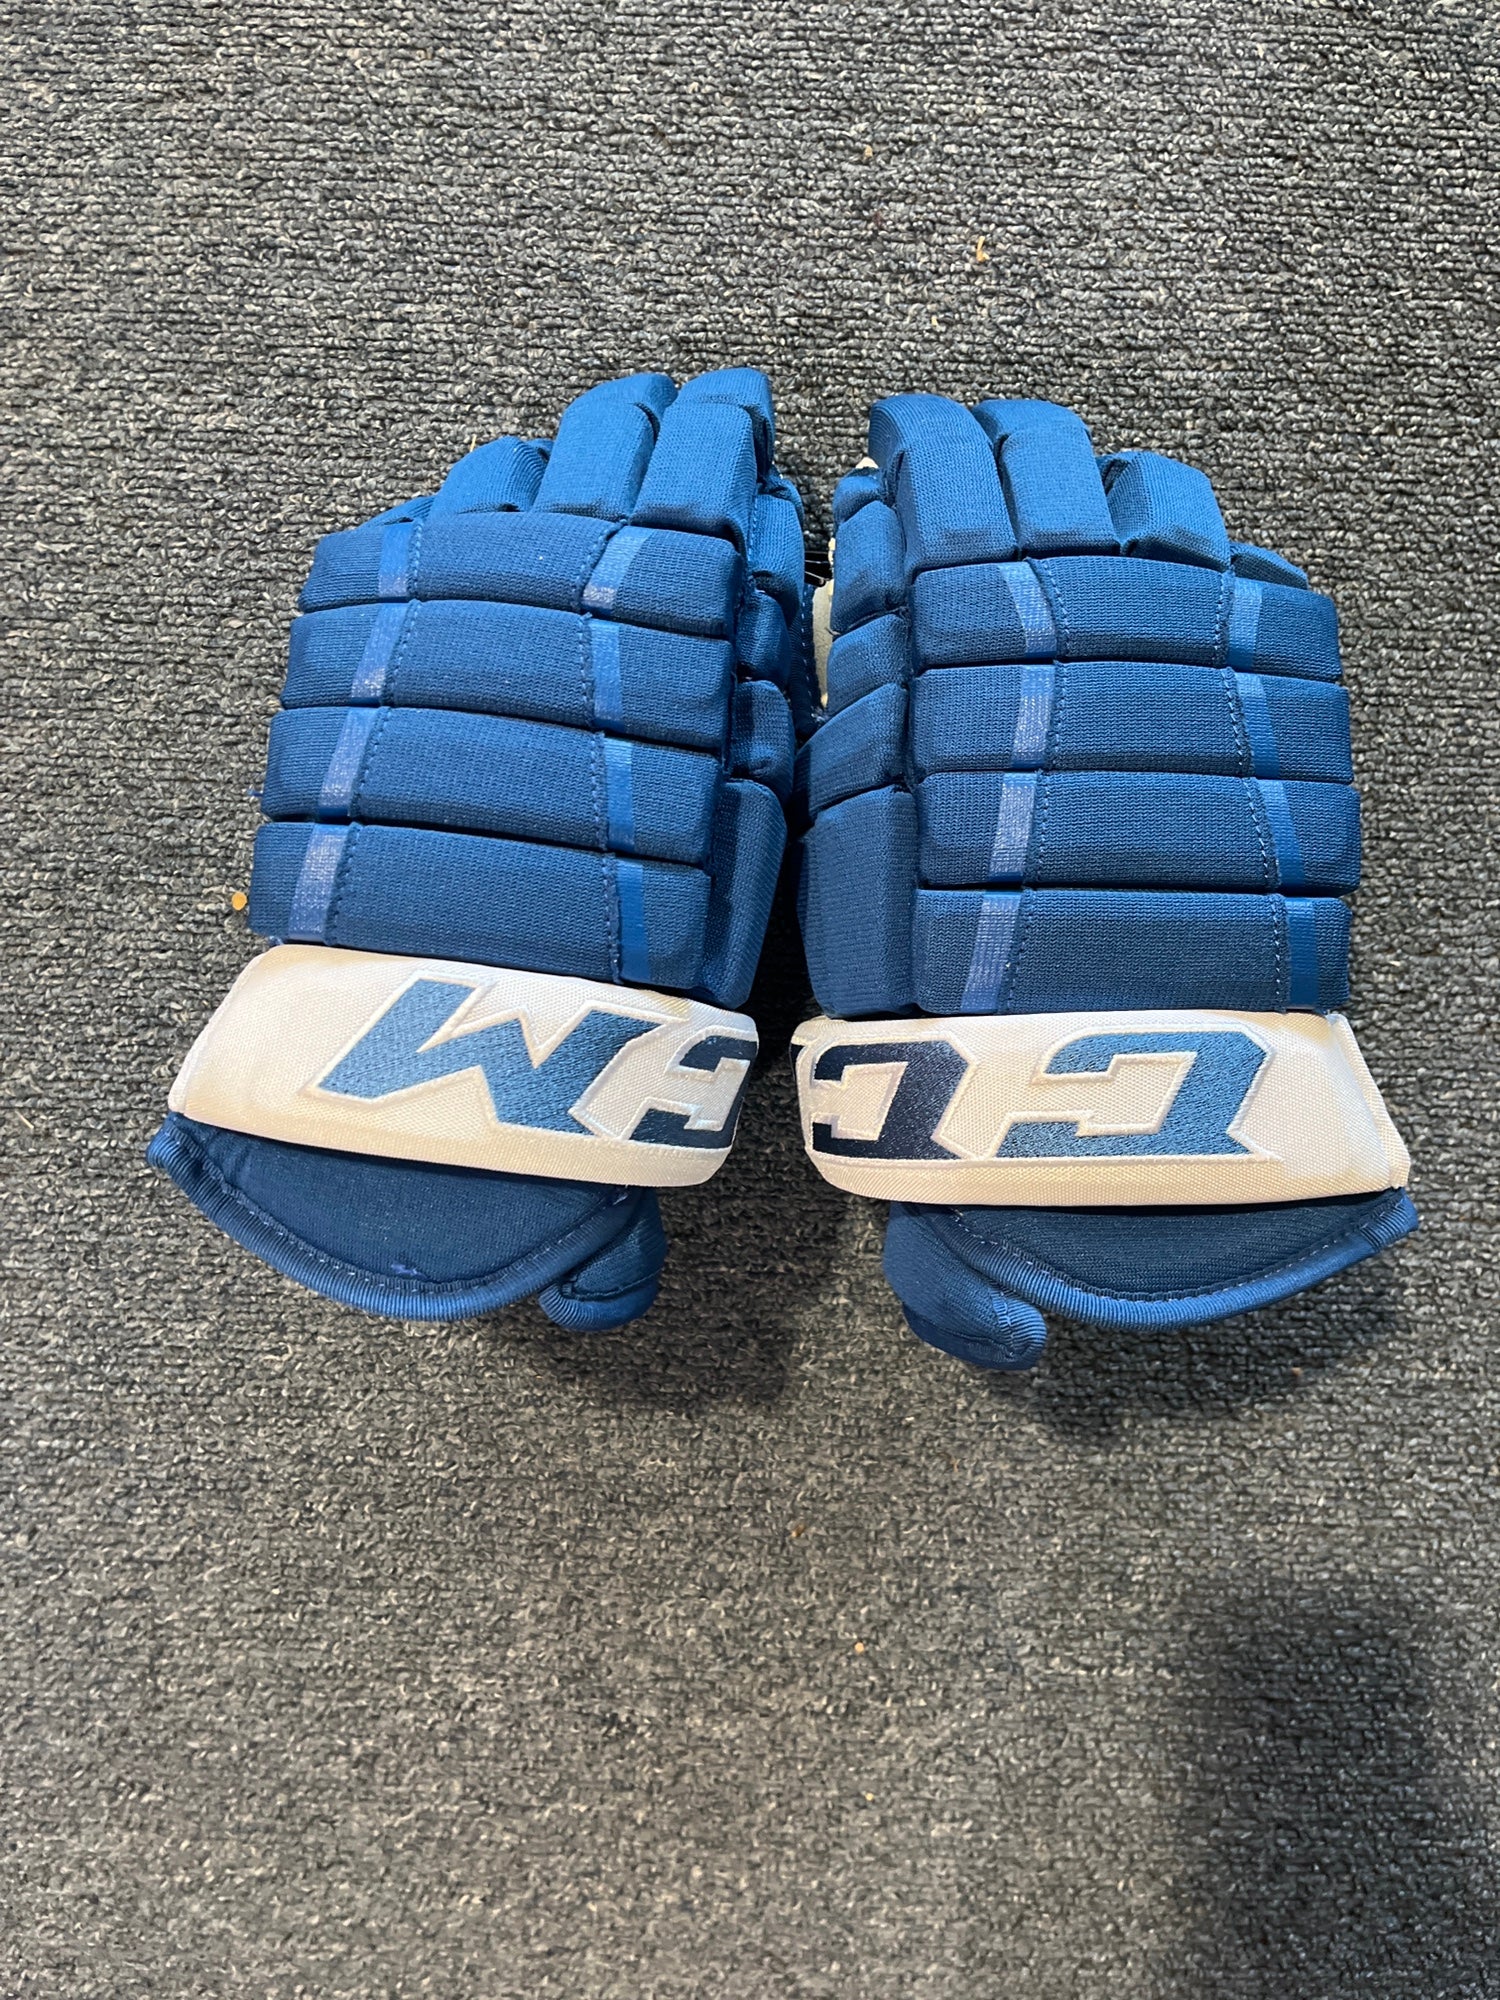 CCM HG97 Pro Stock Hockey Gloves Black AVALANCHE 5283 